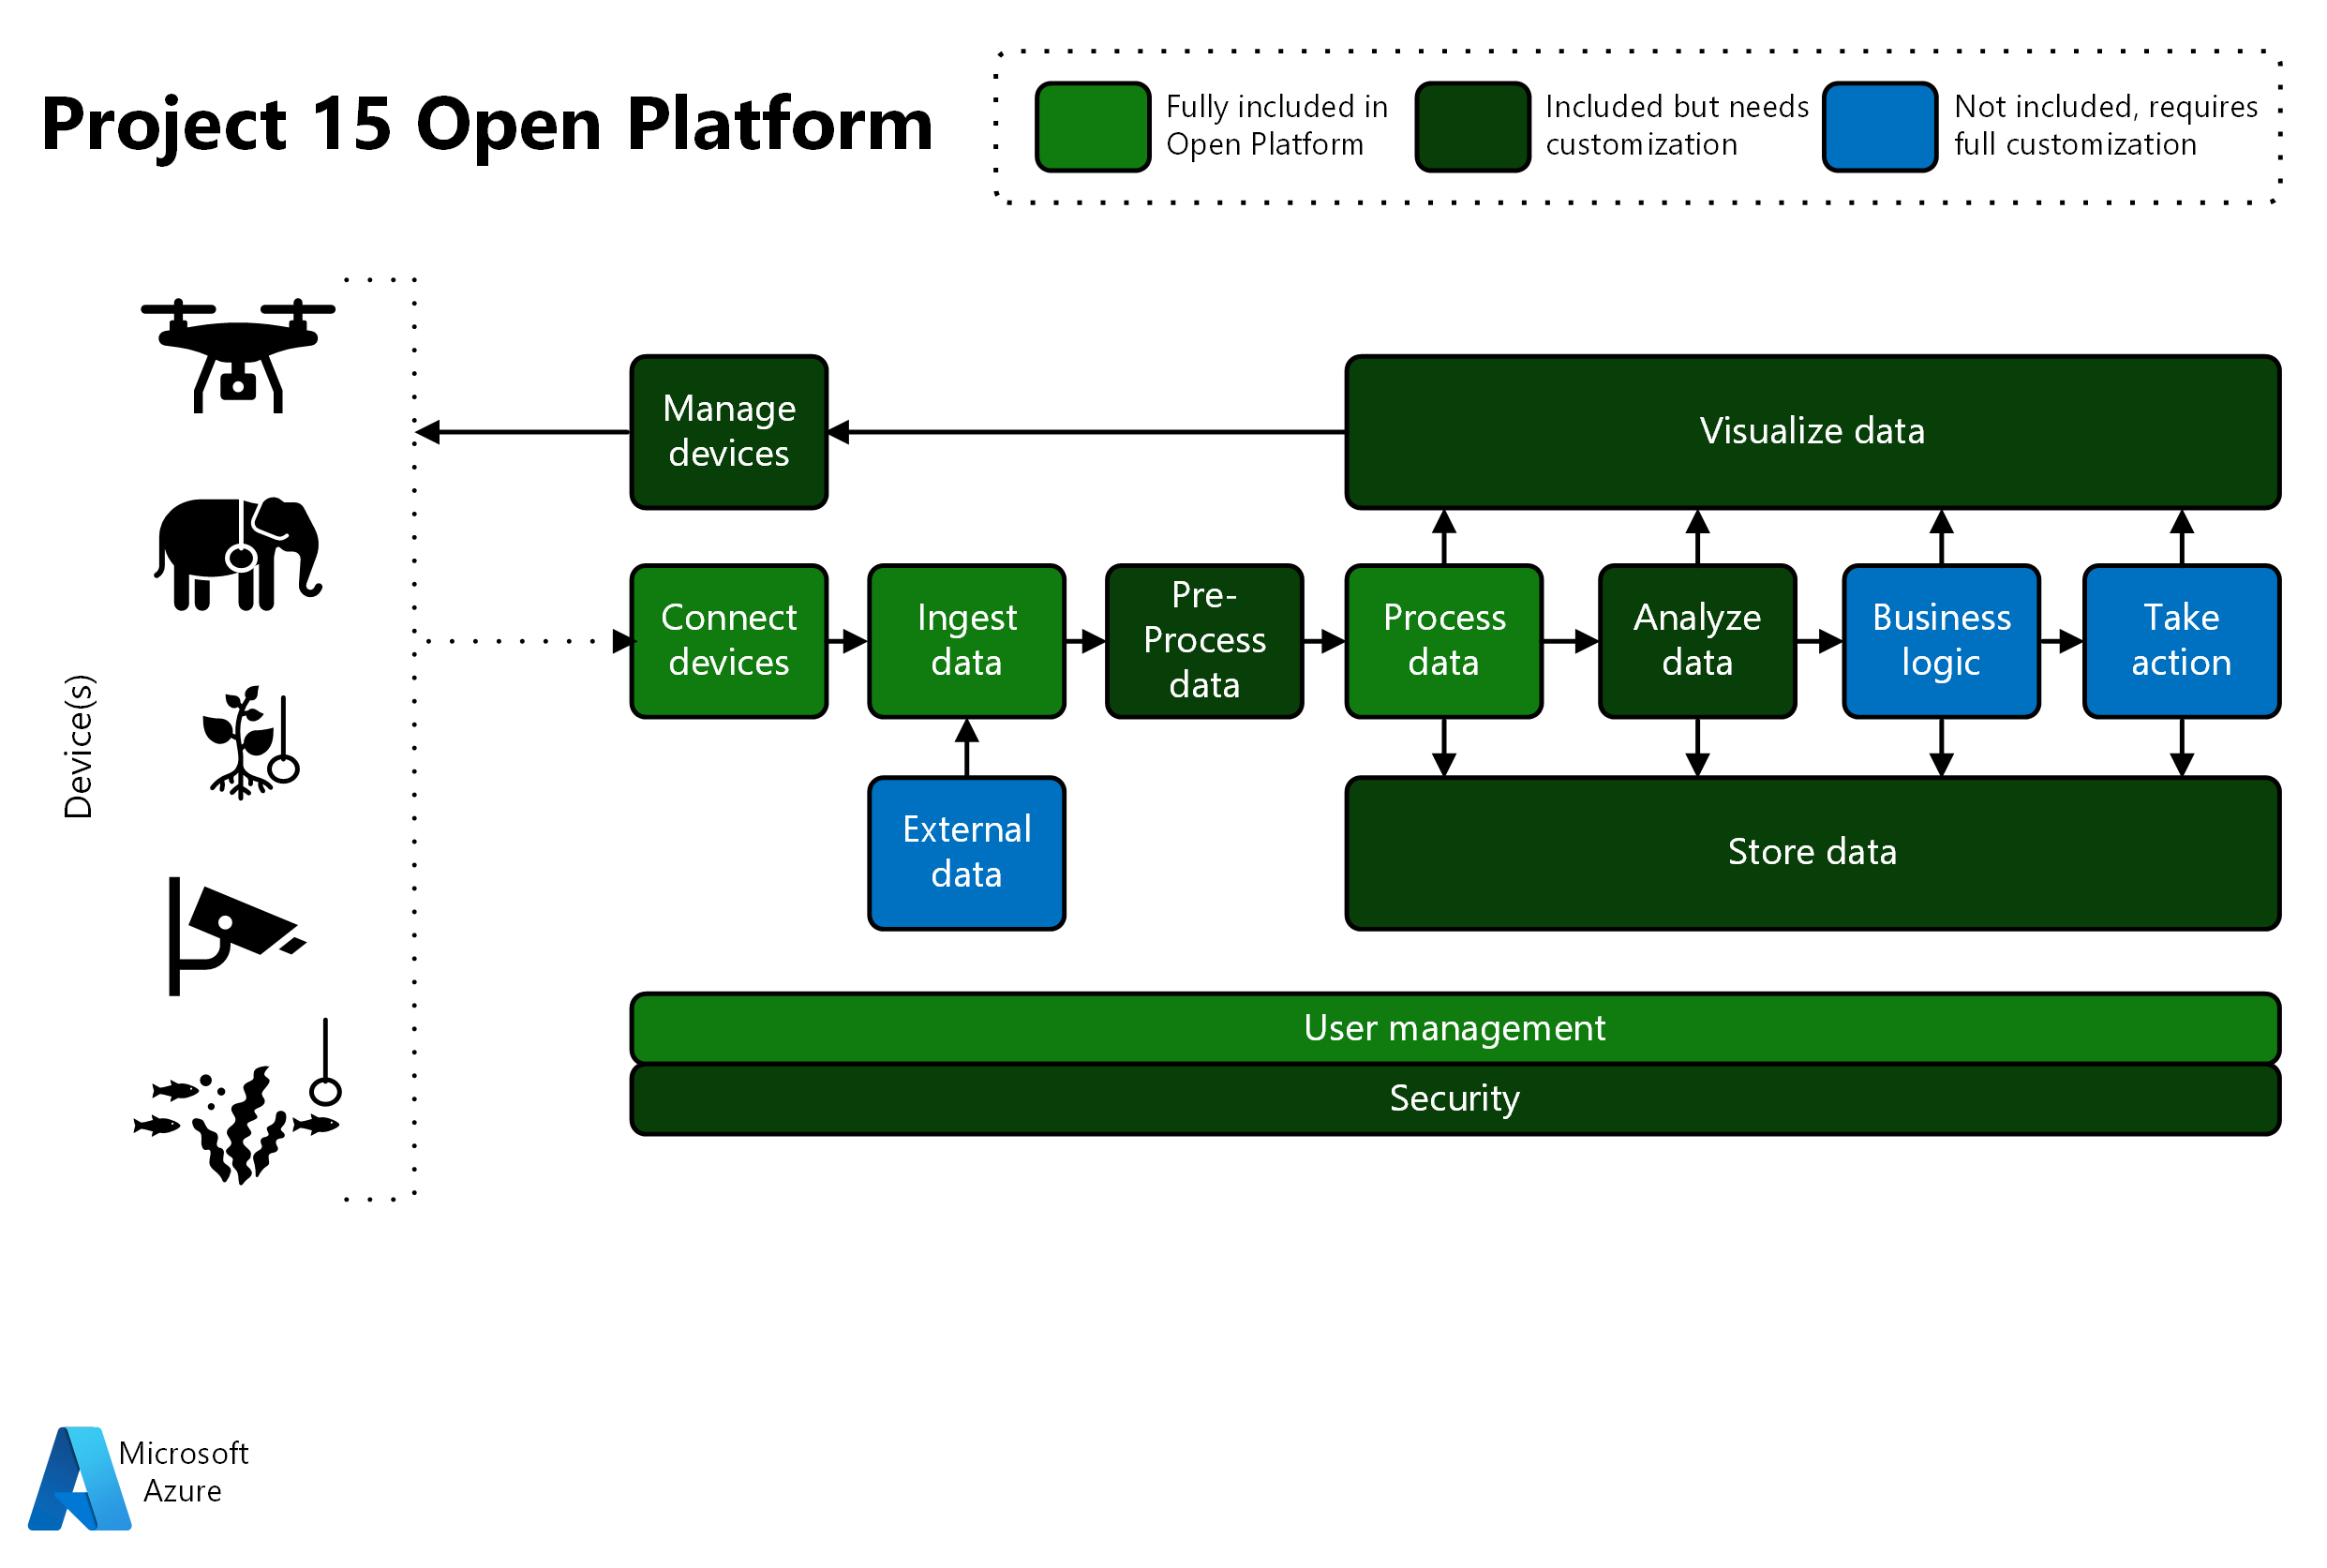 Diagramm: Übersicht über die Funktionen der offenen Plattform von Project 15. Die Farben geben das Maß an Anpassungen an, das ein jeweiliger Bereich erfordert.